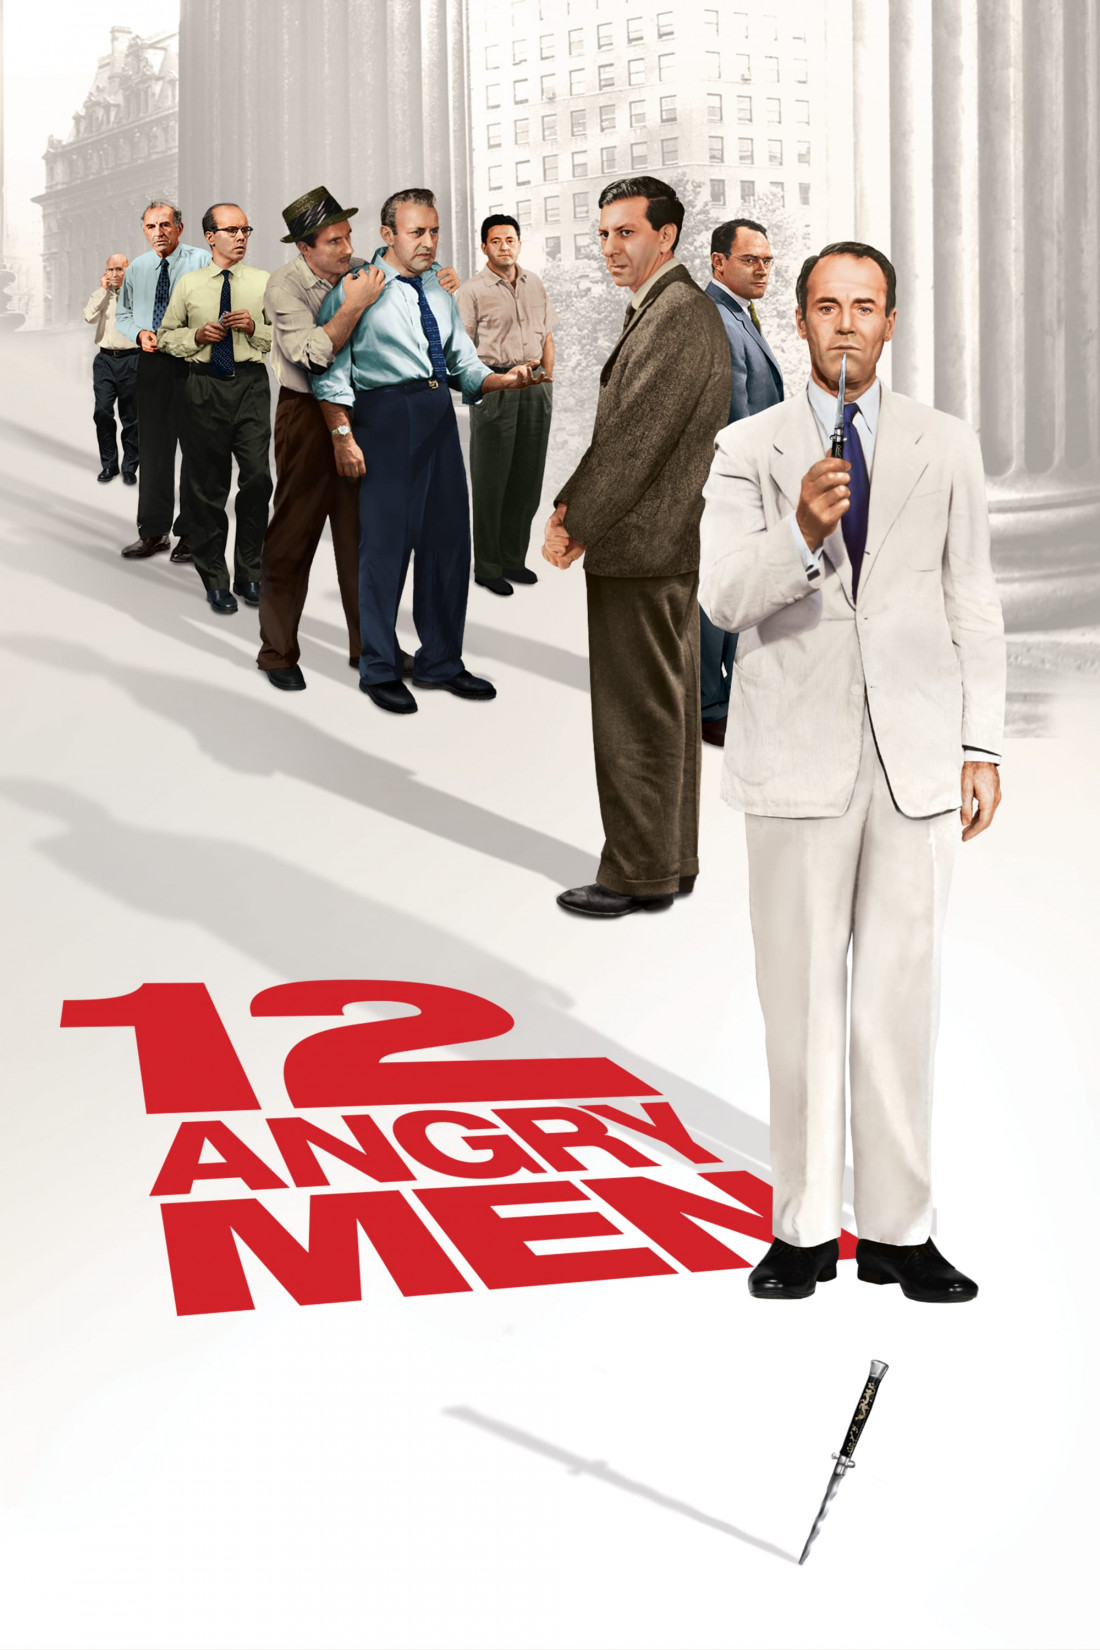 12인의 성난 사람들.12 Angry Men.1957.Criterion.1080p.BW Photo-Image